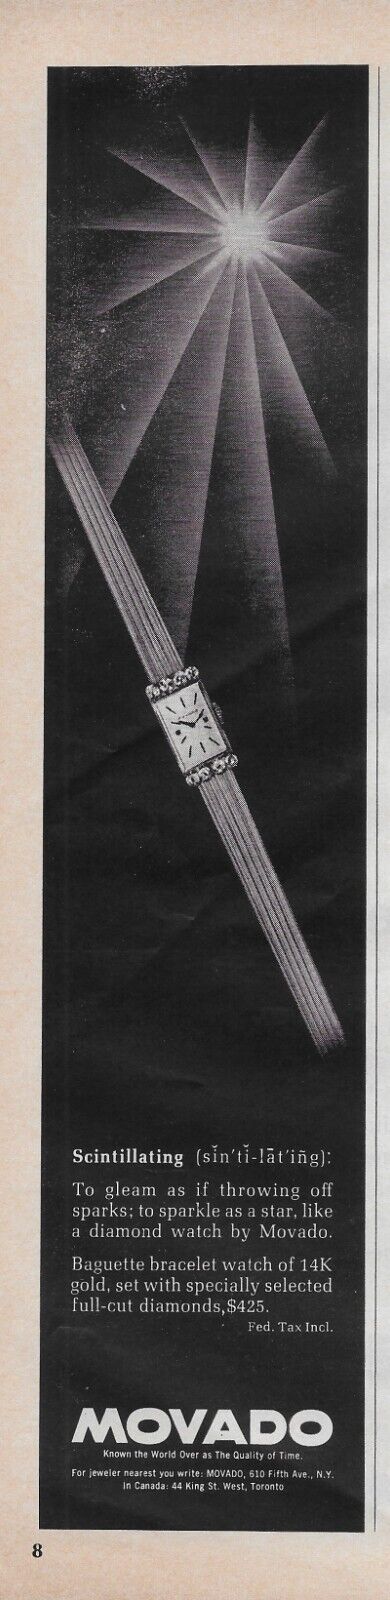 1962 Movado Baguette Bracelet Watch 14k Gold Scintillating Vintage Print Ad